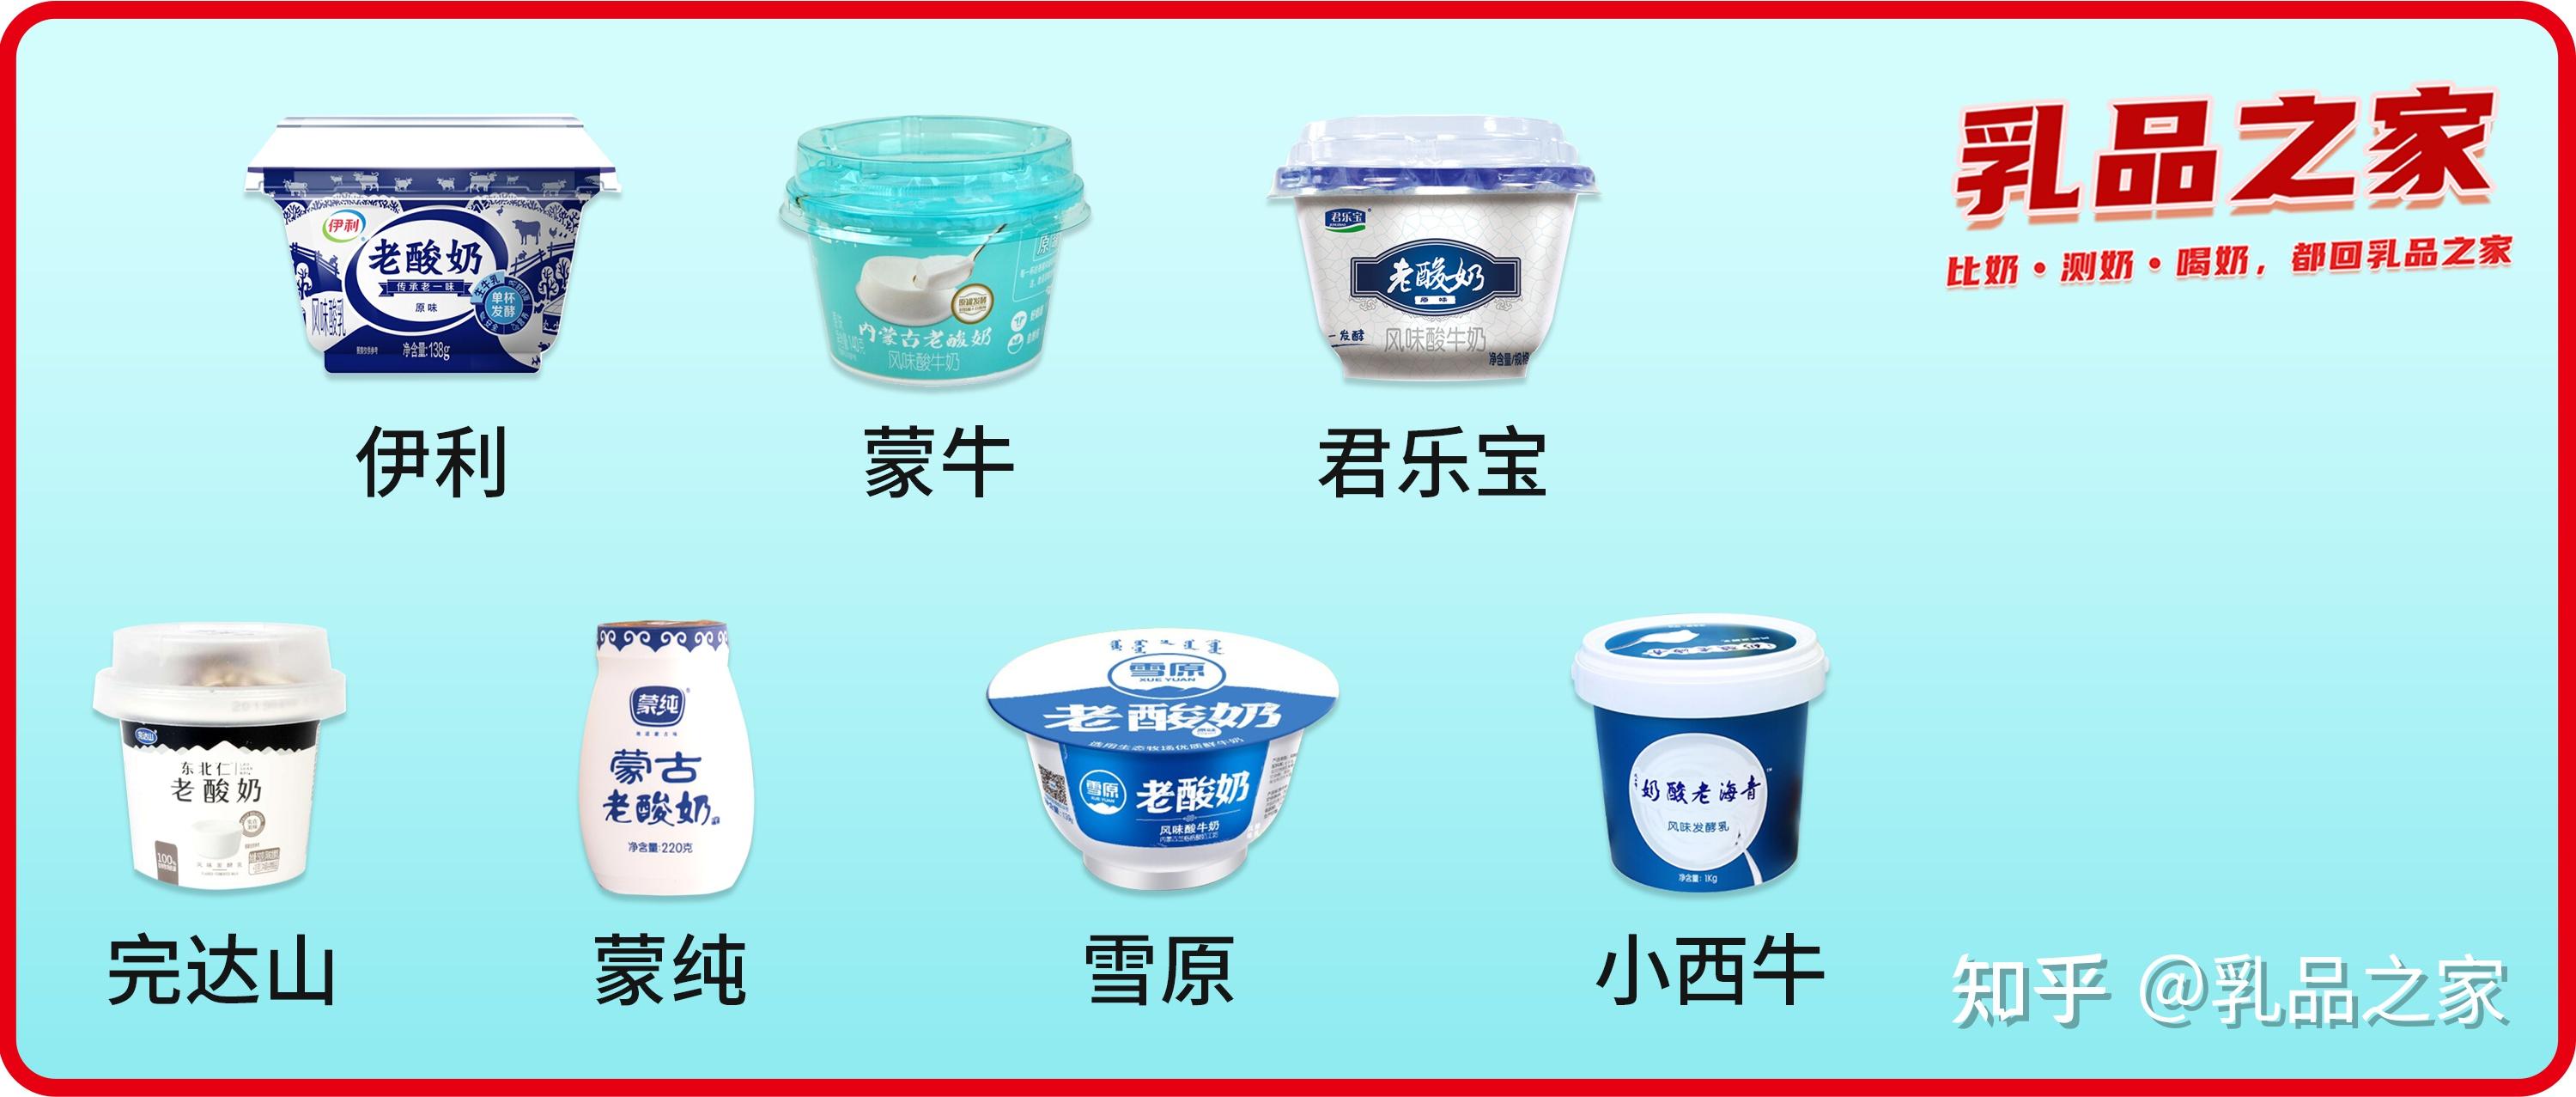 【酸奶品牌】酸奶十大品牌乳酸菌-酸牛奶-老品yb体育牌榜中榜